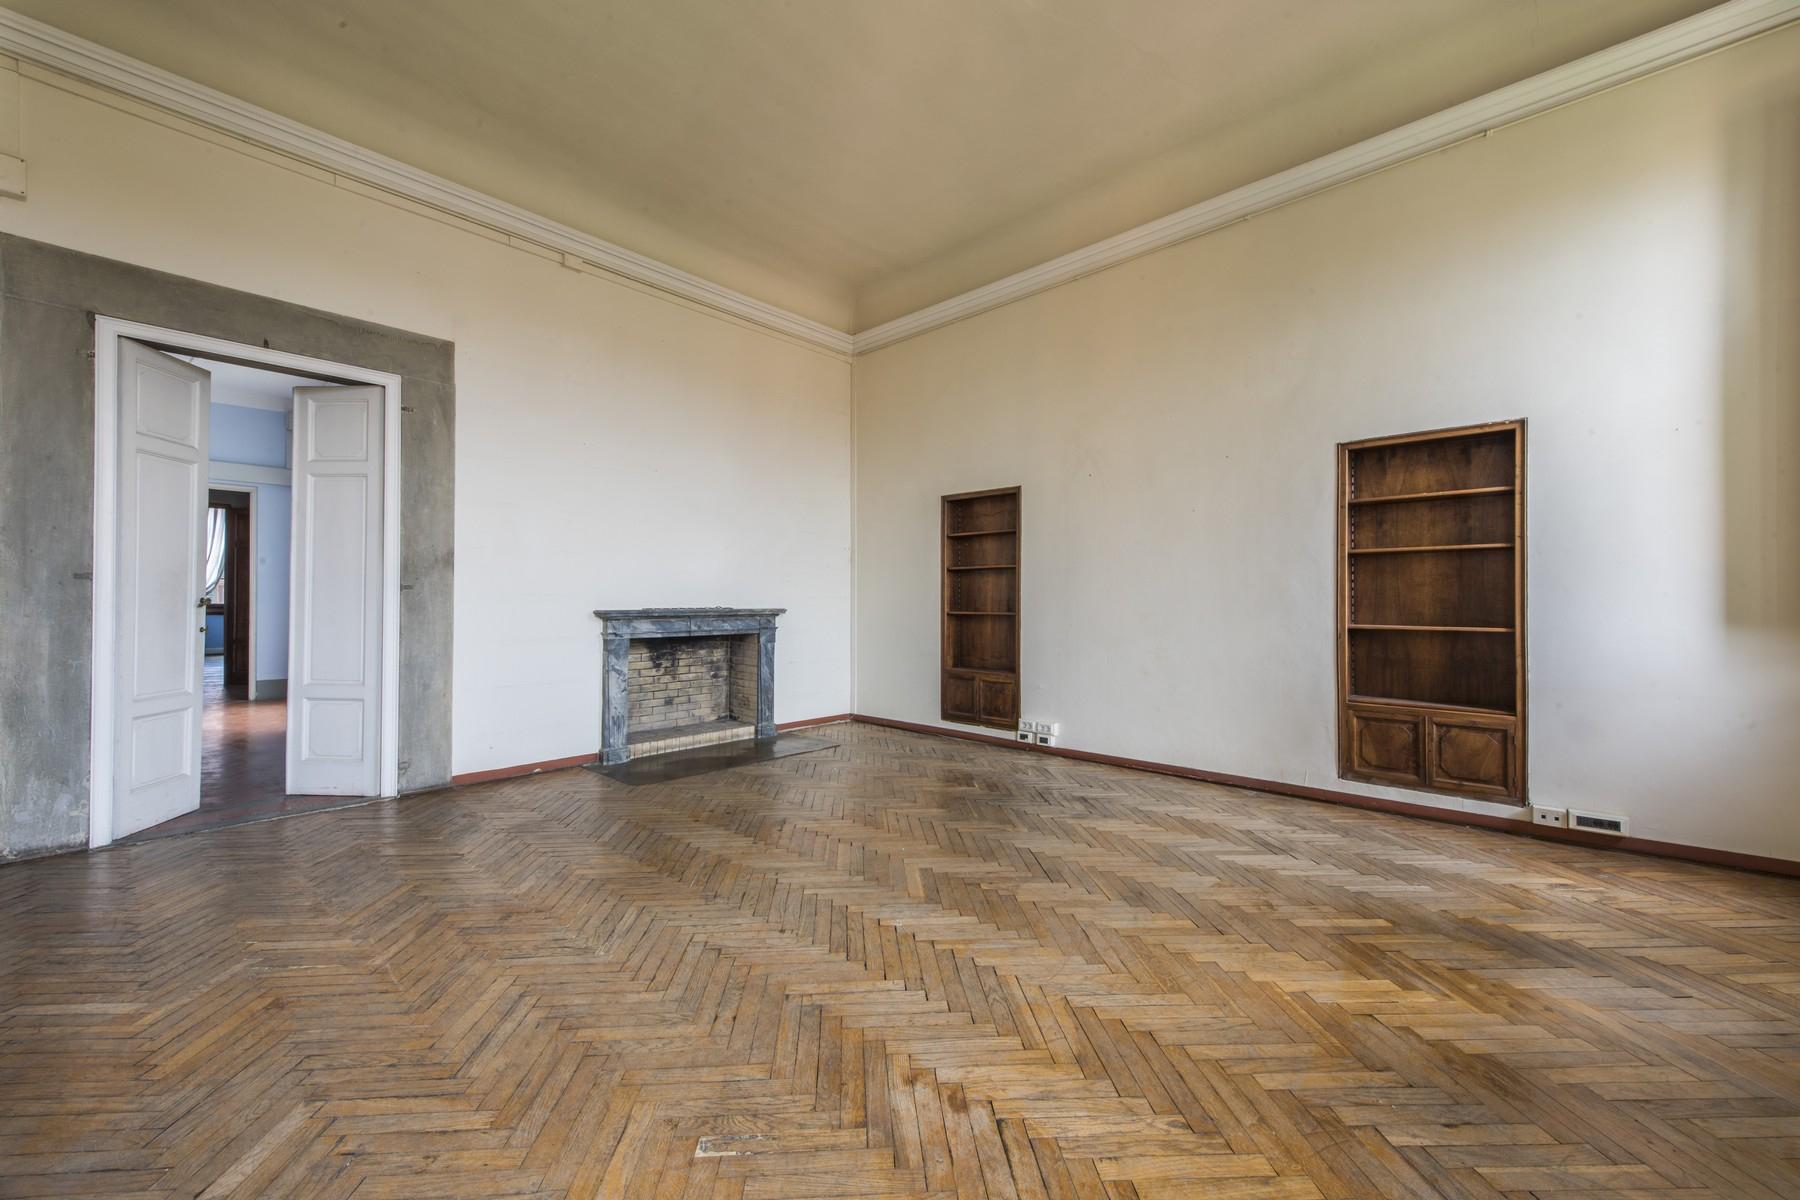 Великолепный пентхаус площадью 520 кв.м в историческом флорентийском палаццо - 9